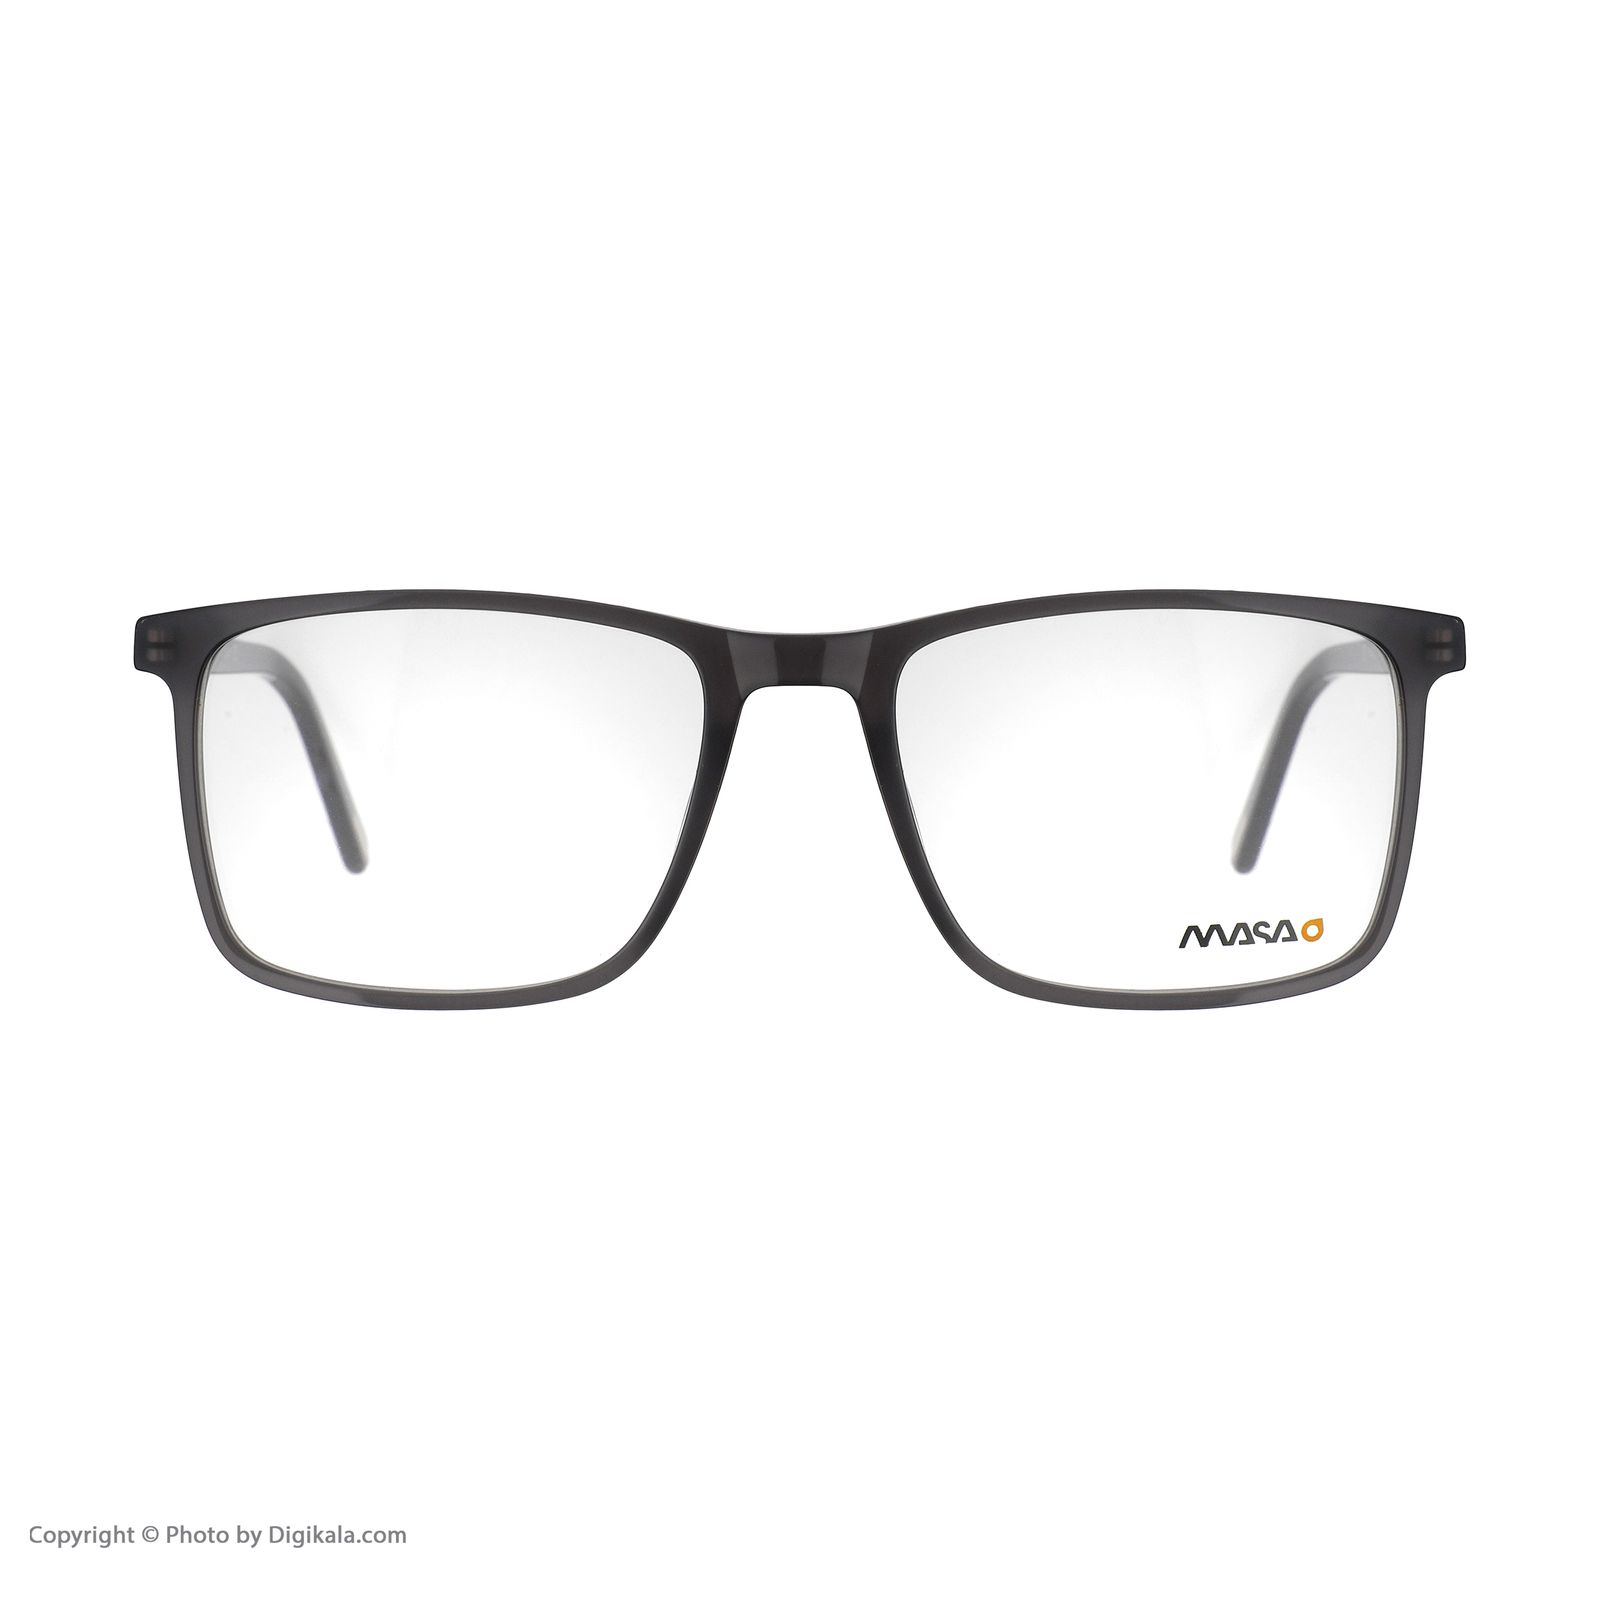 فریم عینک طبی ماسائو مدل 13185-608 -  - 2